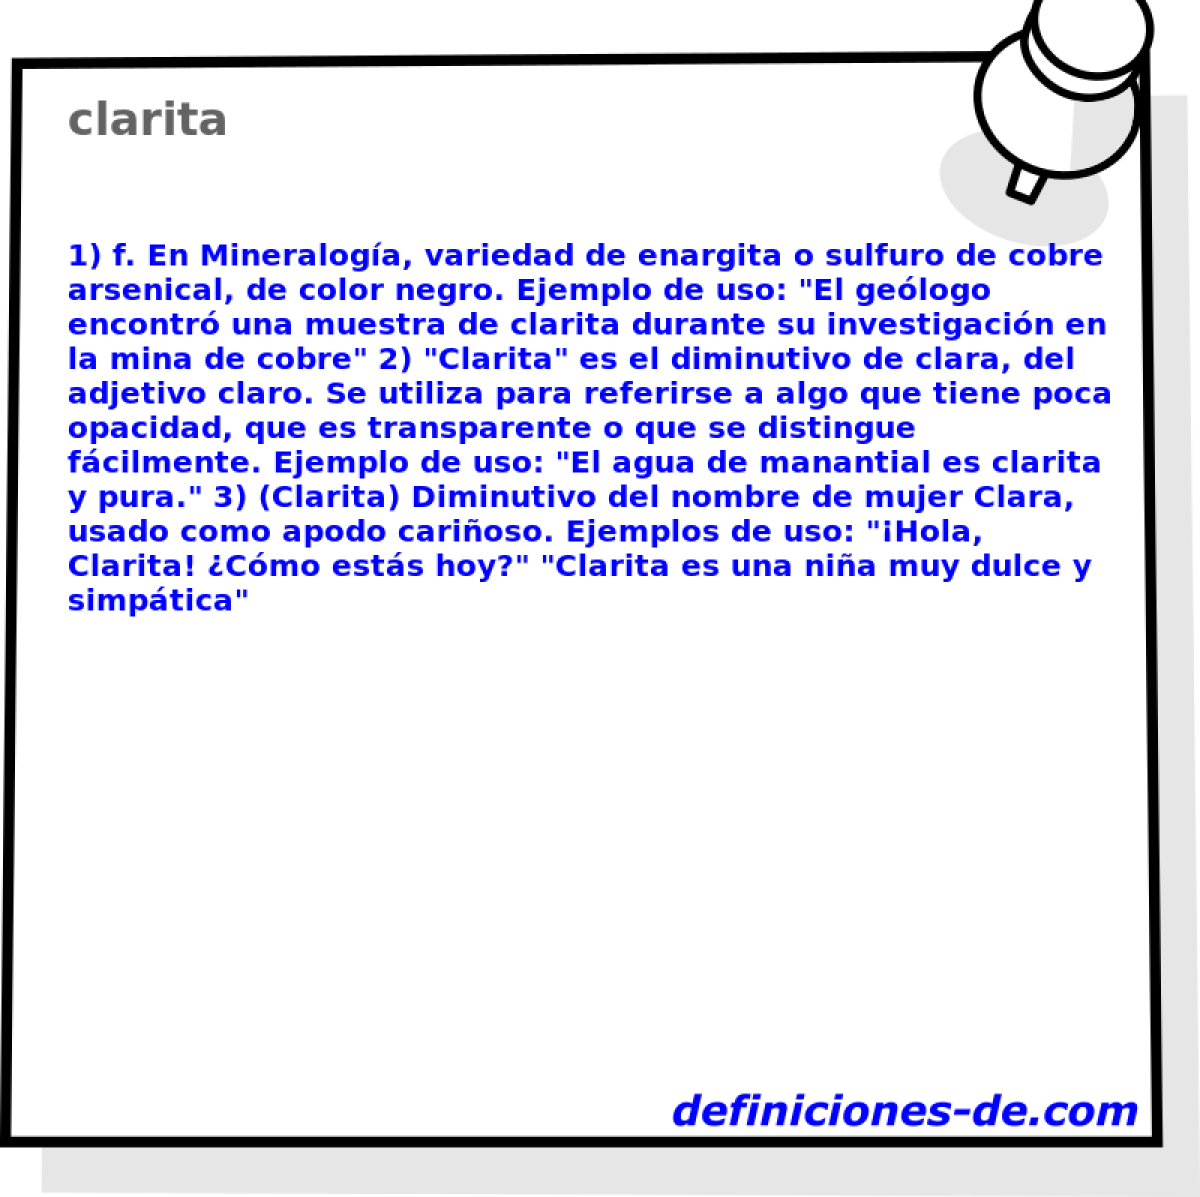 clarita 